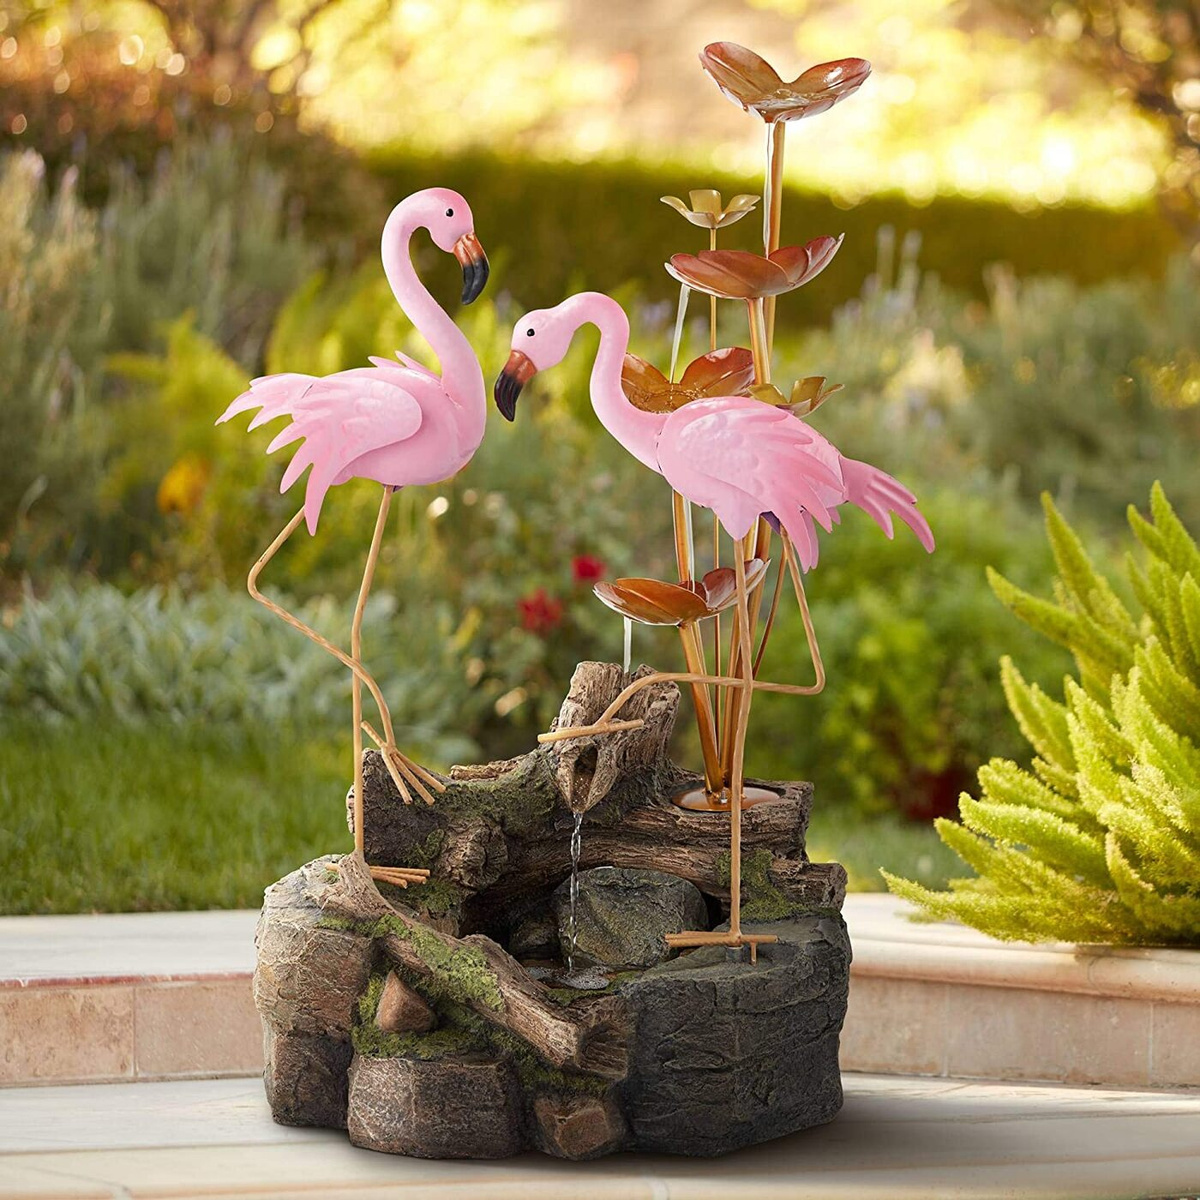 Фонтан декоративный садовый Фламинго GA-04674 GREEN APPLE / Фонтанчик для сада / Уличный фонтан 72 см #1